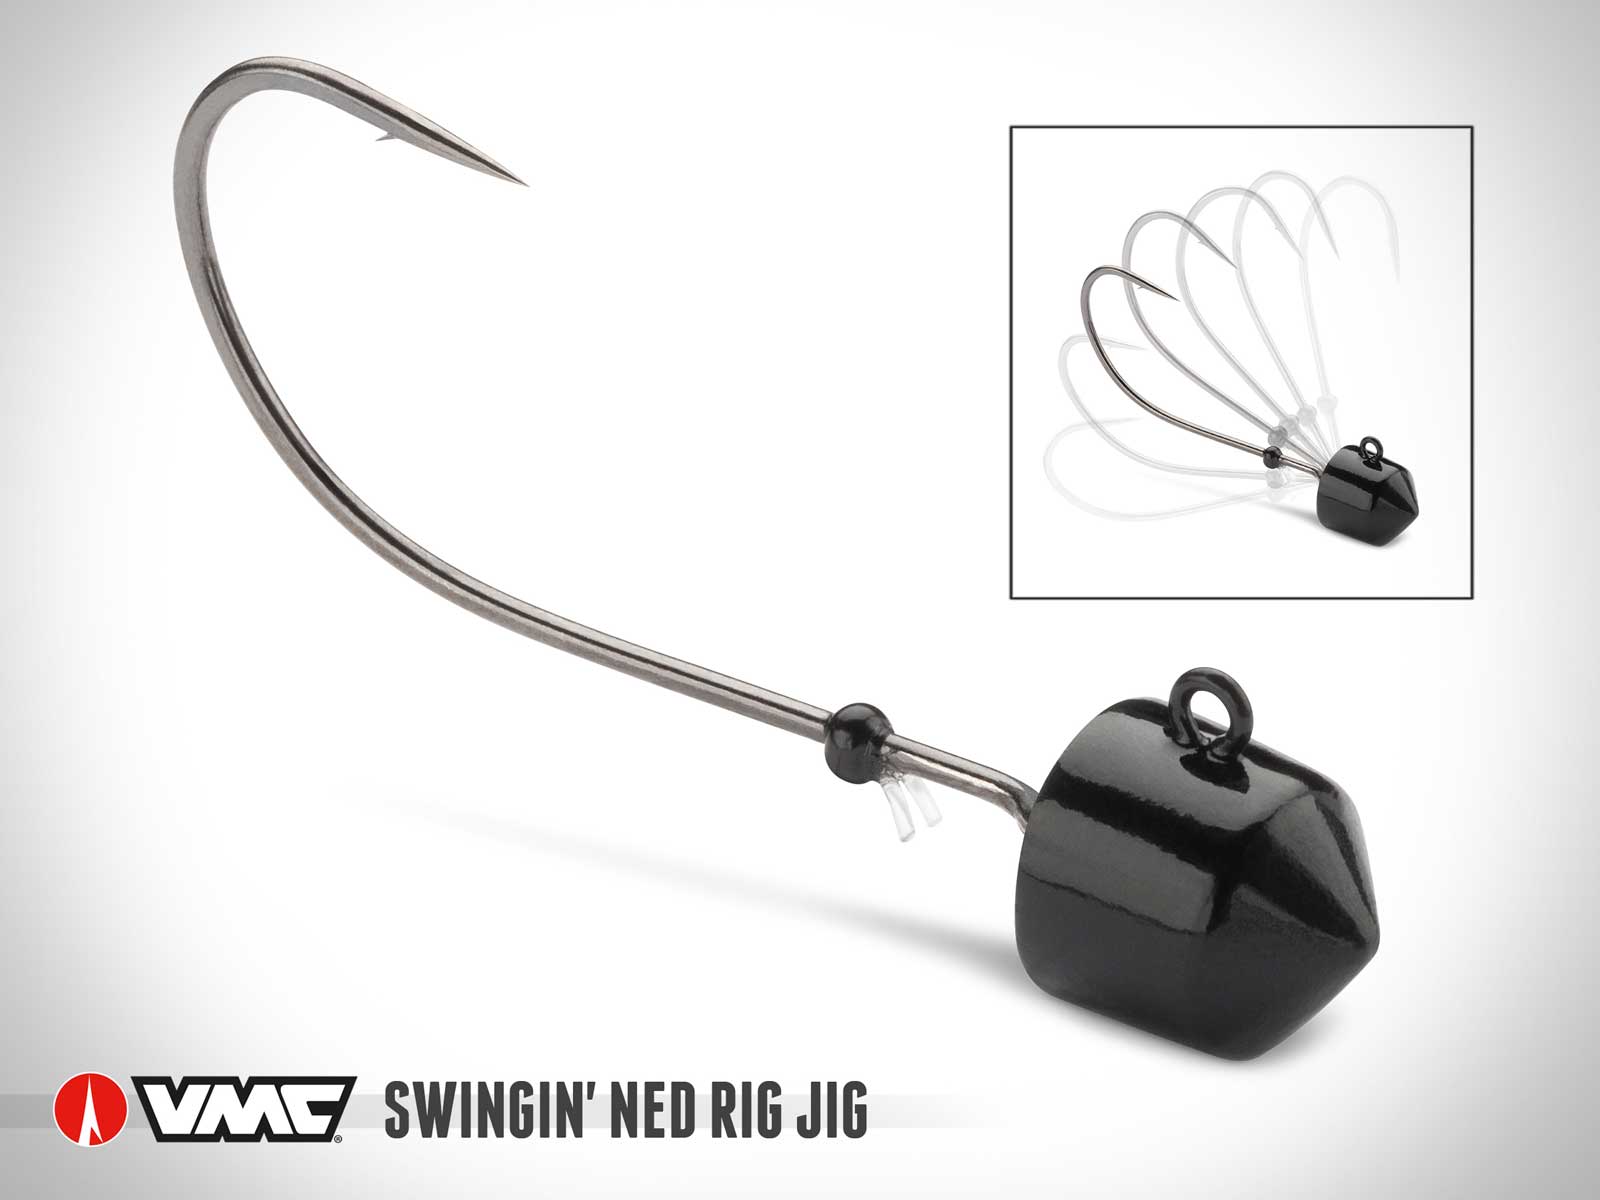 VMC Swingin’ Ned Rig Jig